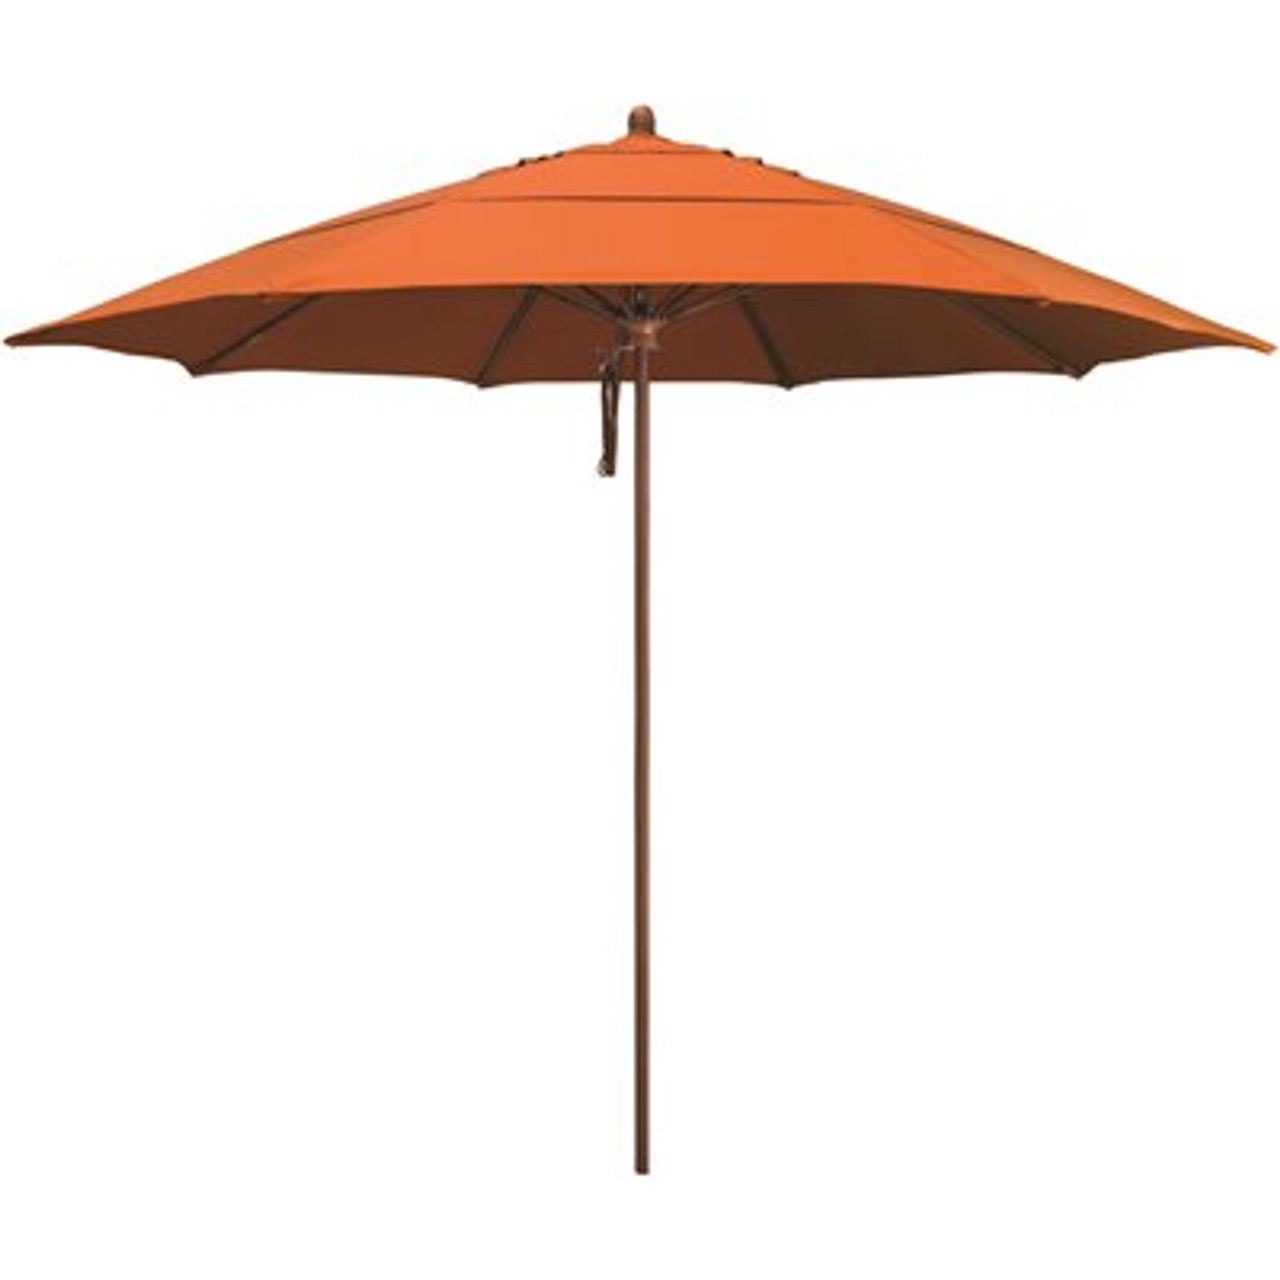 11 ft. Woodgrain Aluminum Commercial Market Patio Umbrella Fiberglass Ribs and Pulley Lift in Tuscan Sunbrella